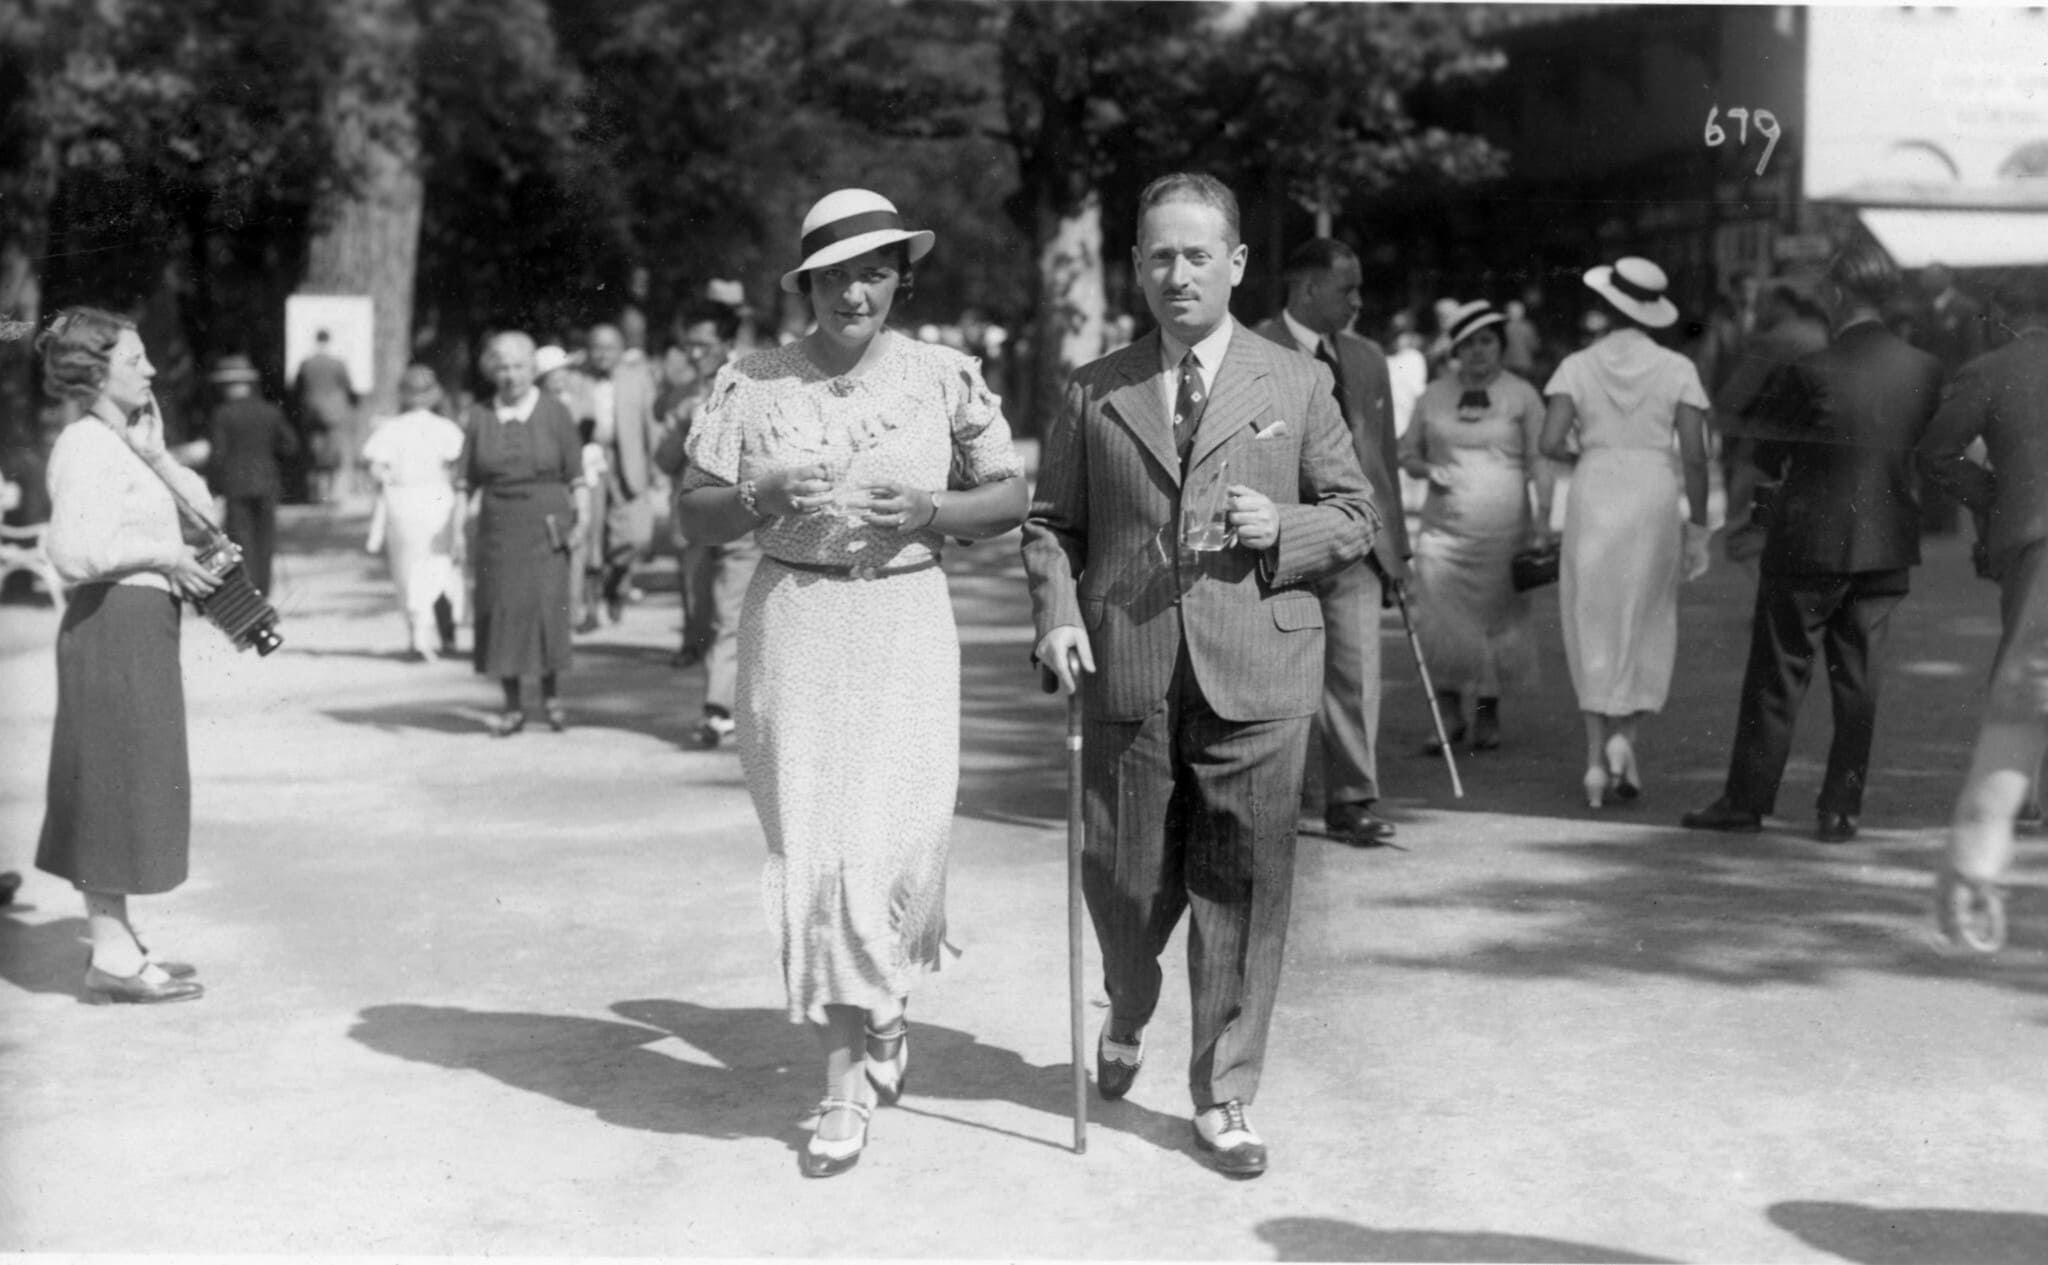 אדולף "דוֹלוּ" פינקלשטיין ולוסיה פינקלשטיין בלבוב. אמצע שנות ה־30 (צילום: אוסף משפחת פינקלשטיין)